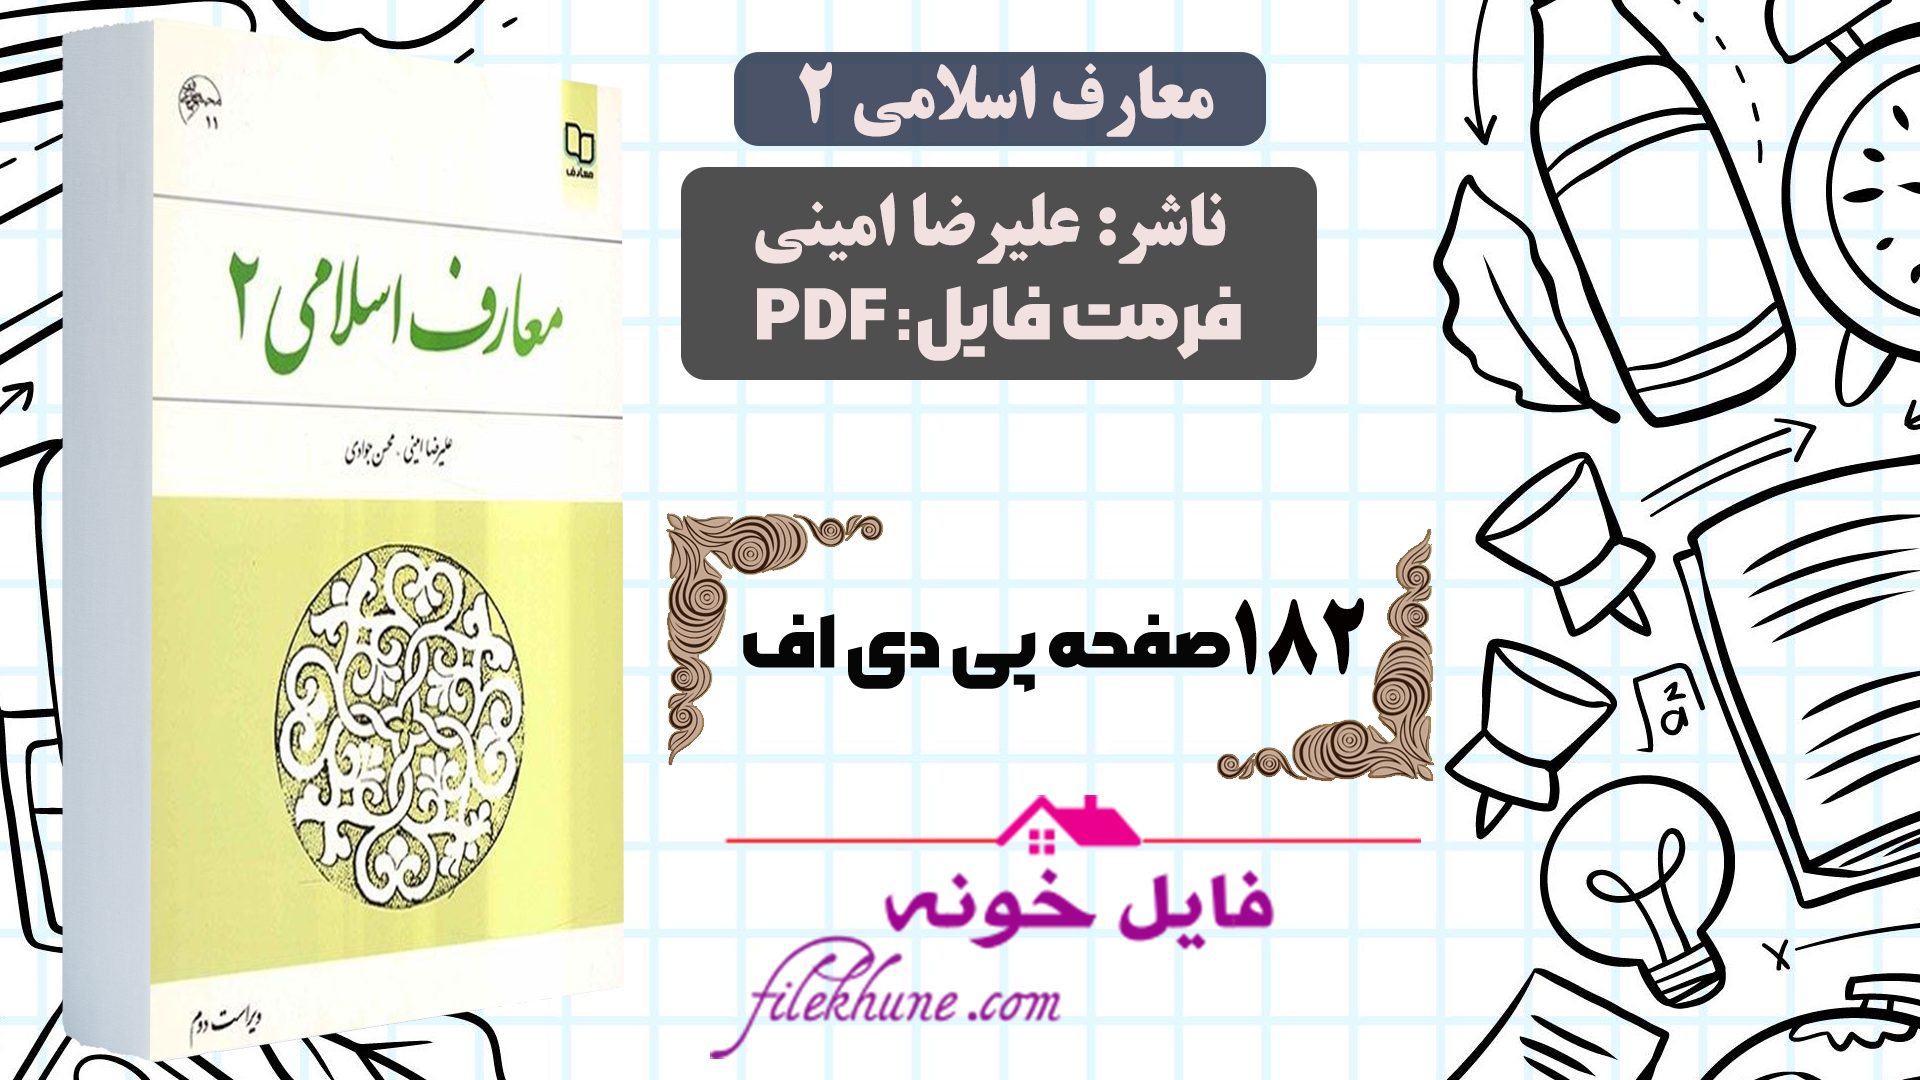 دانلود  کتاب معارف اسلامی 2 علیرضا امینی PDF + قابل سرچ - فایل خونه 